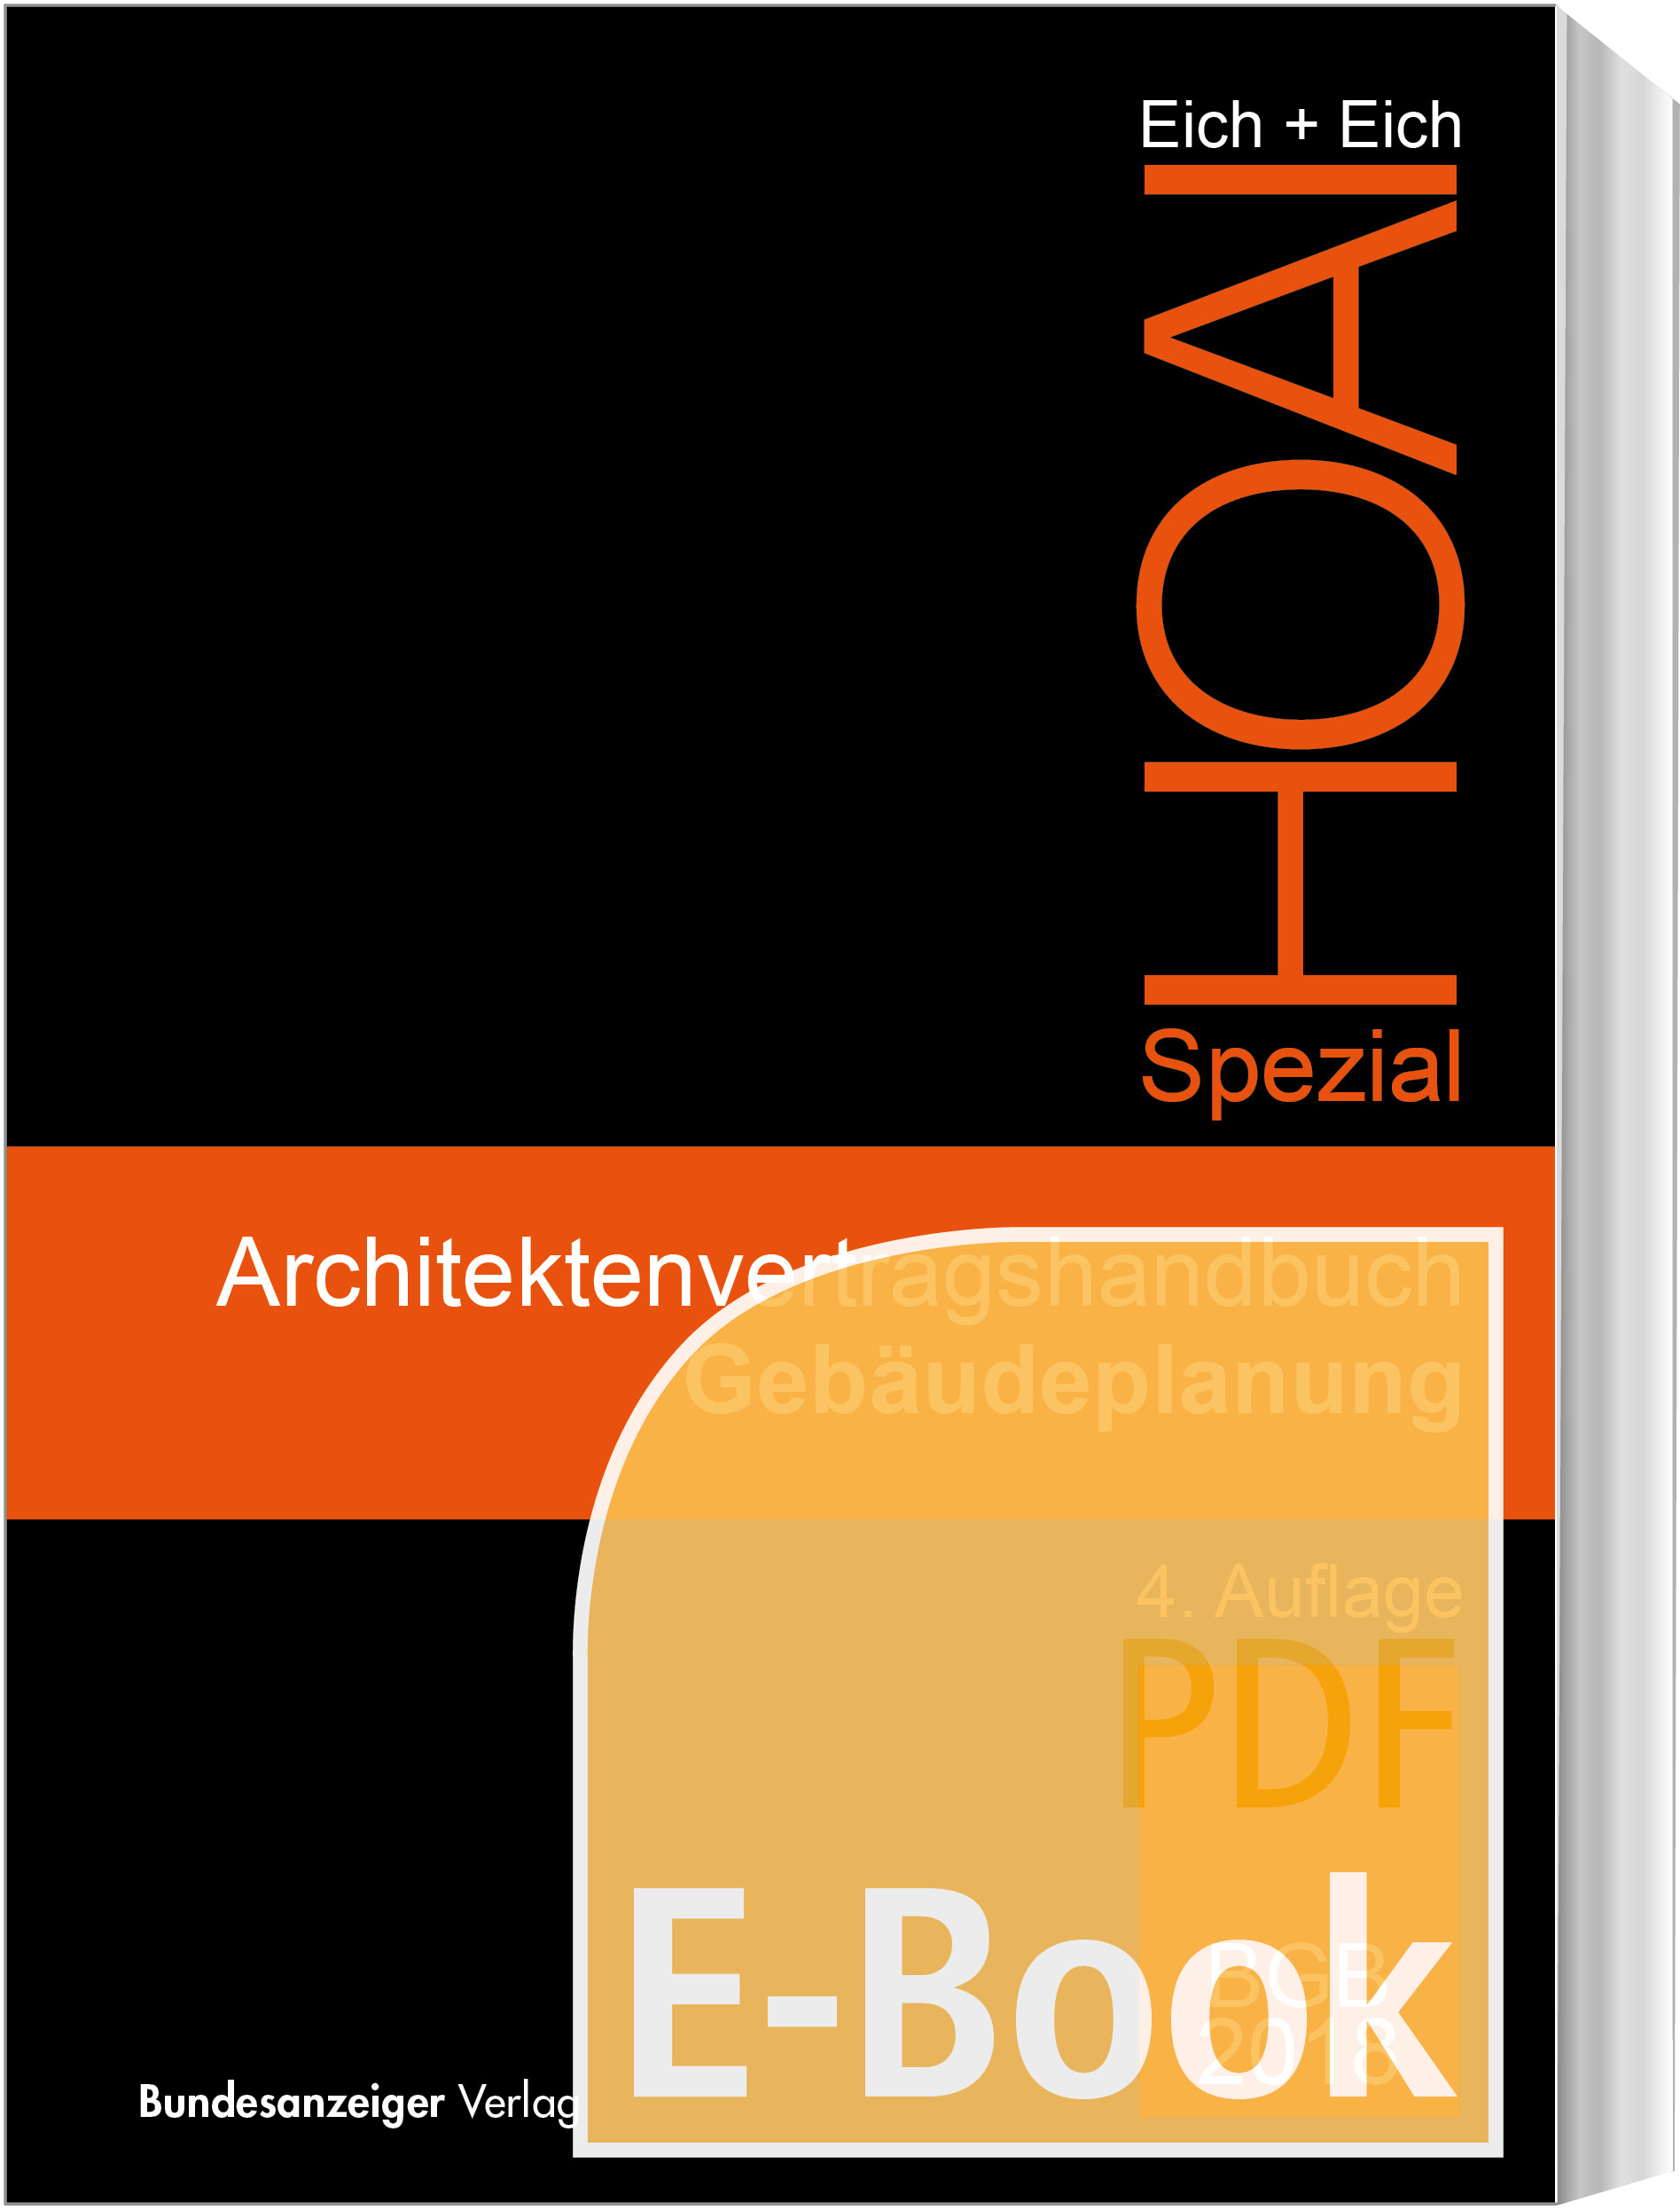 Architektenvertragshandbuch Gebäudeplanung (E-Book)